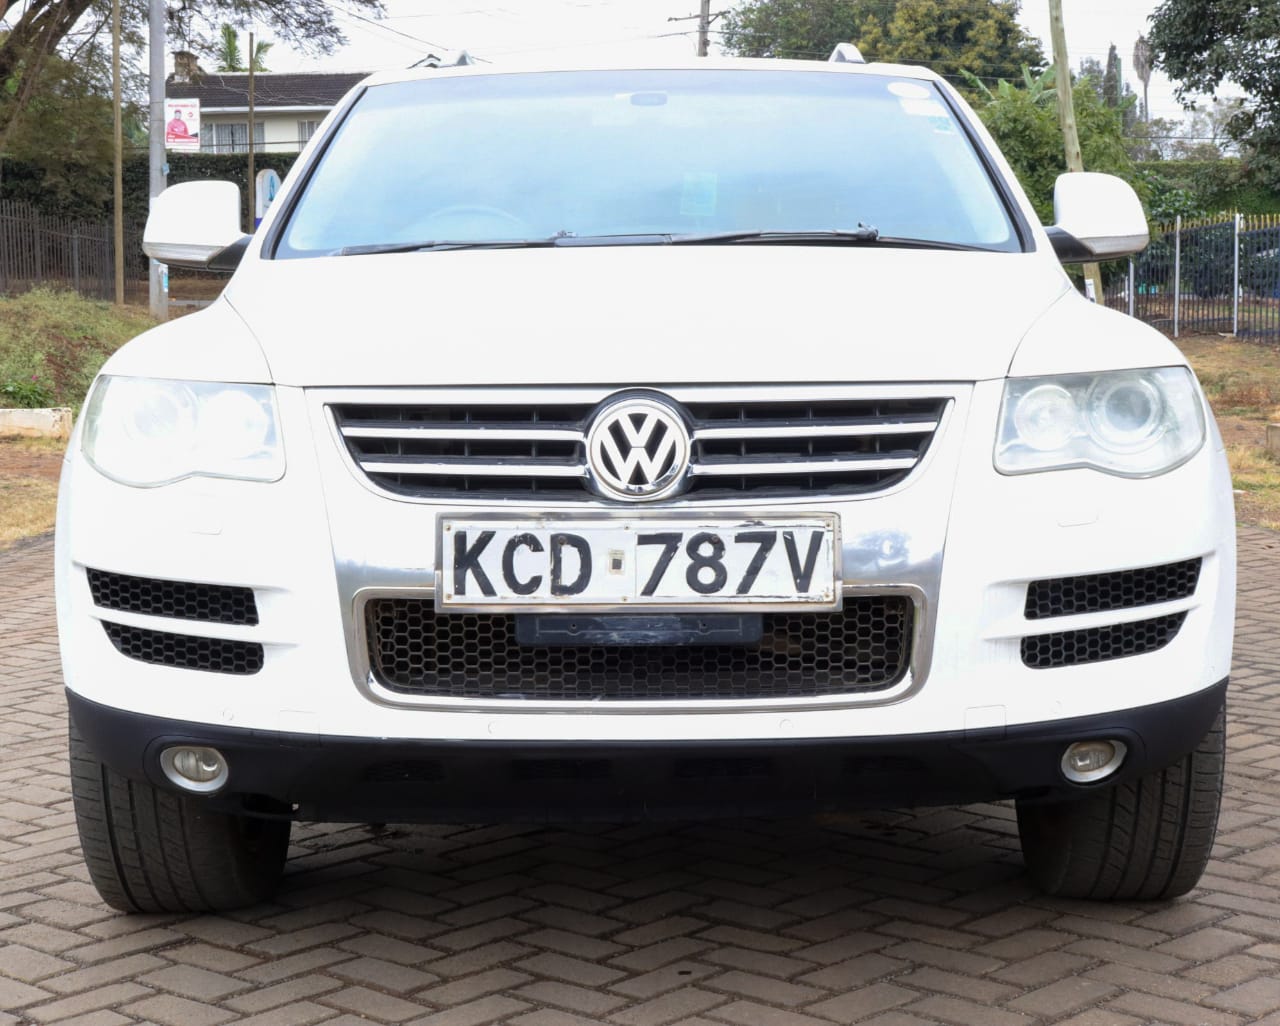 Volkswagen VW Touareg Pay 30%  Deposit Trade in Ok Hot